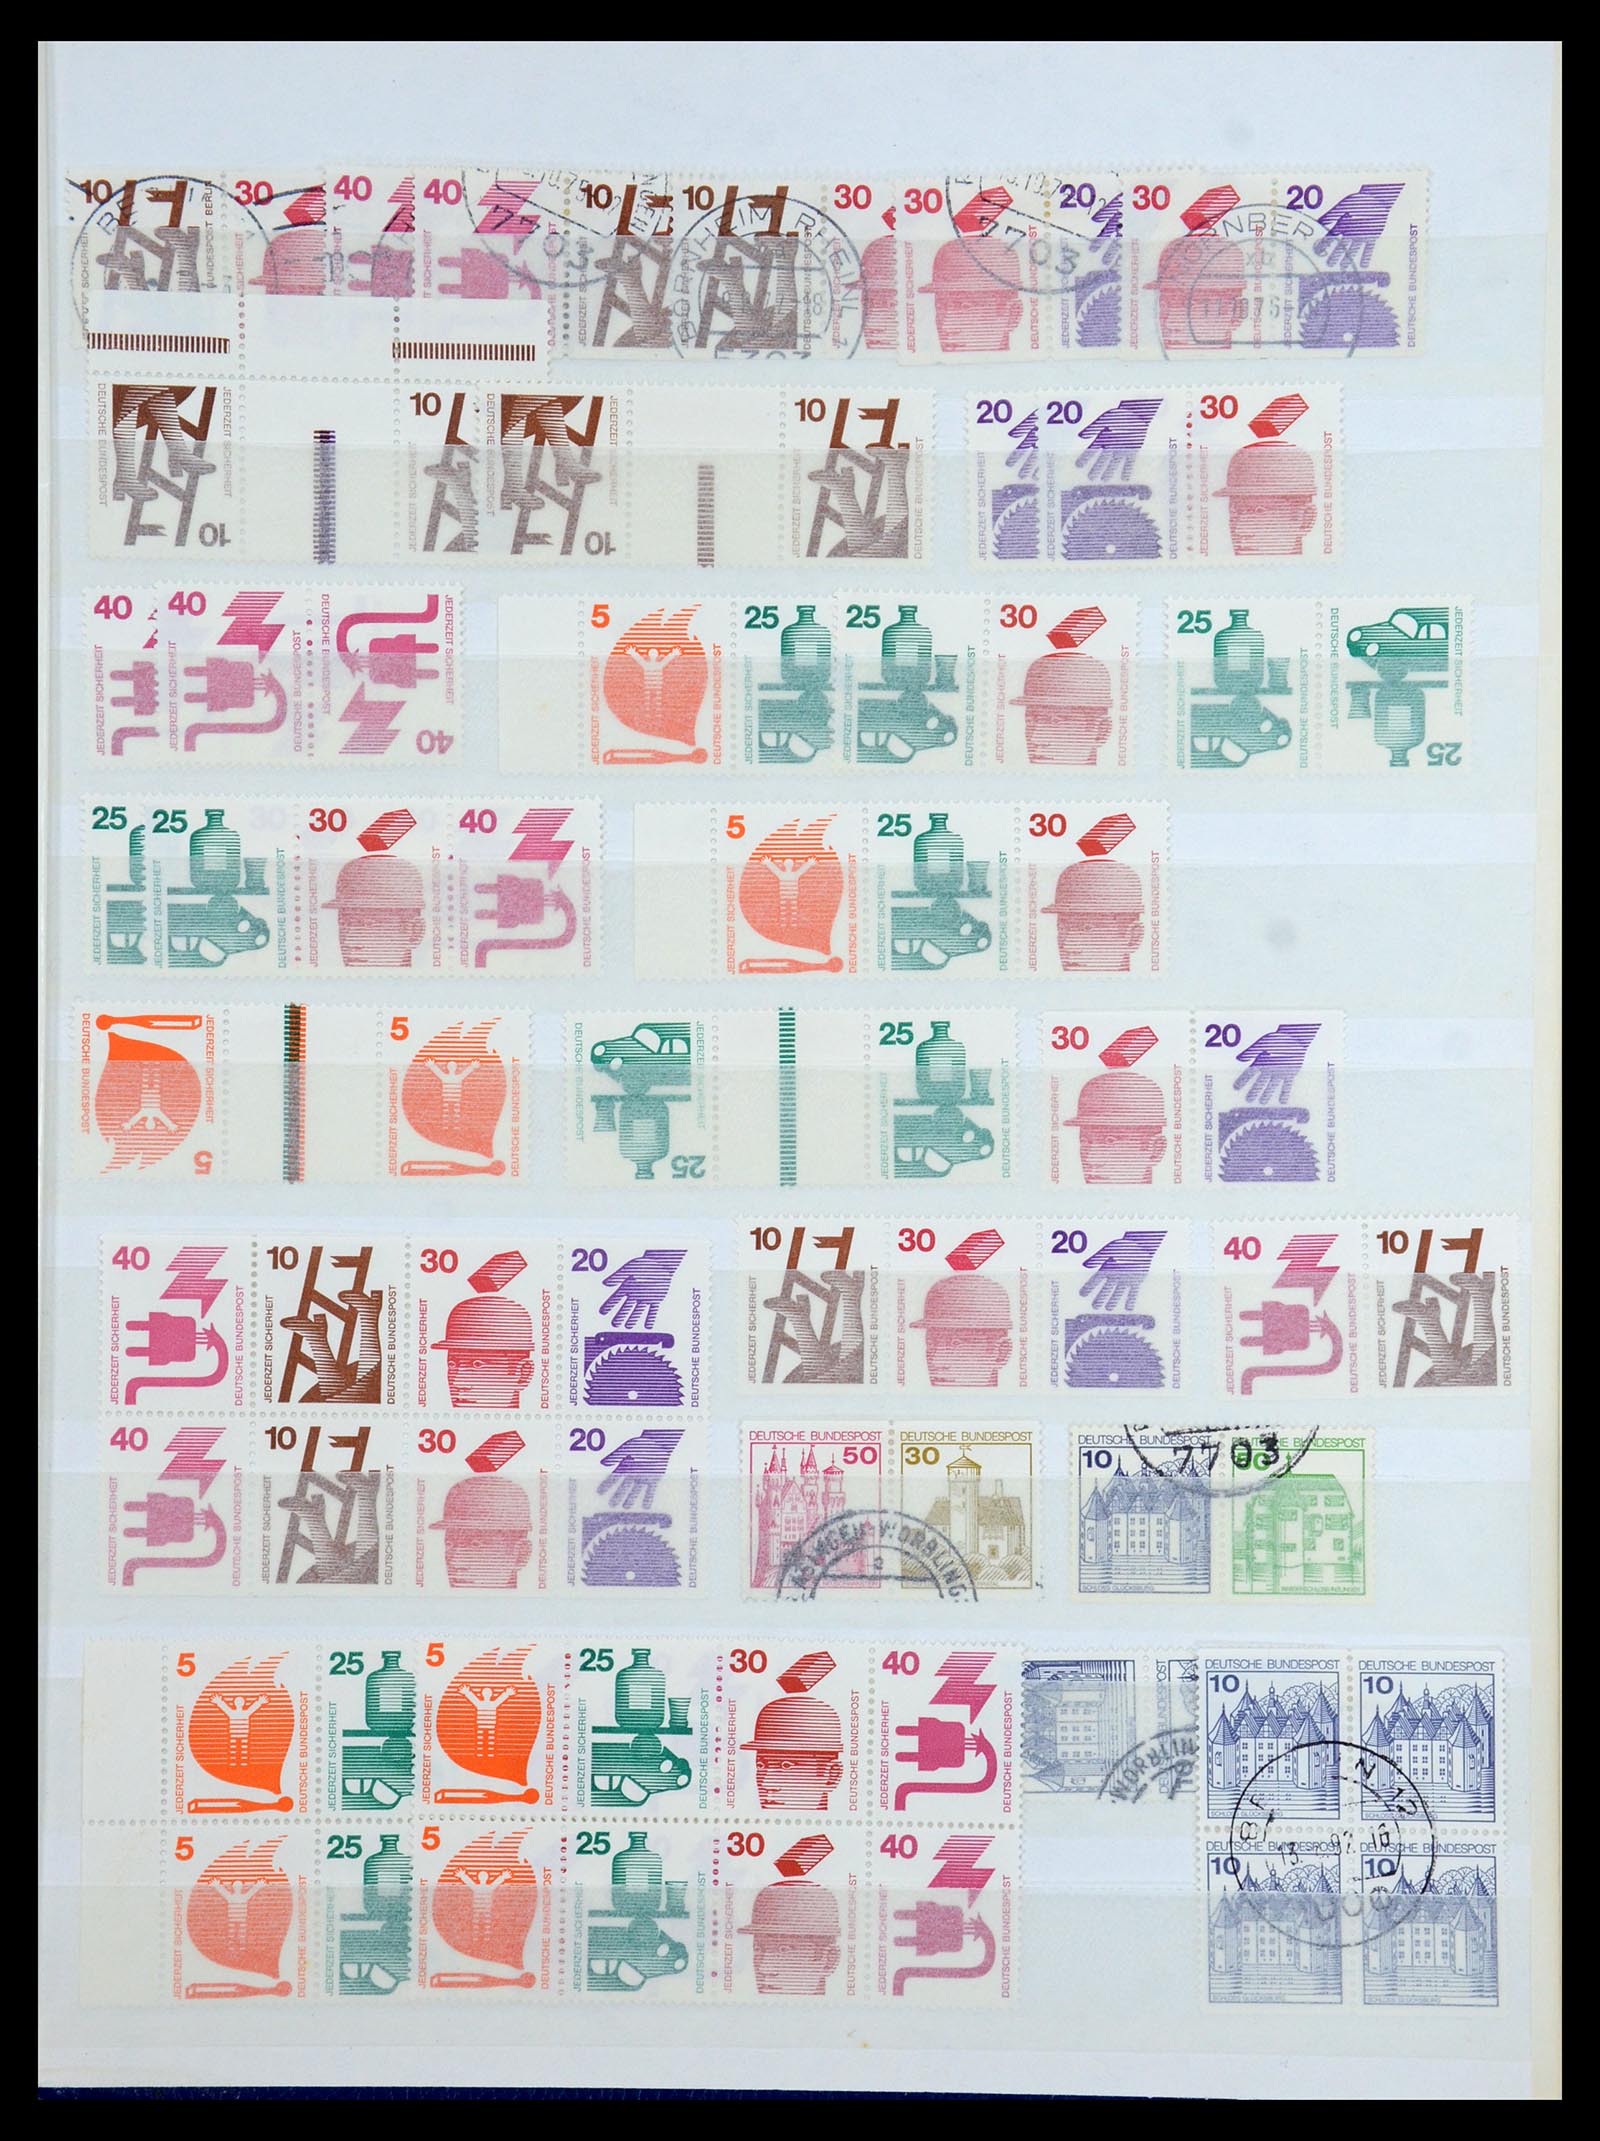 36370 032 - Postzegelverzameling 36370 Duitsland combinaties 1910-1980.